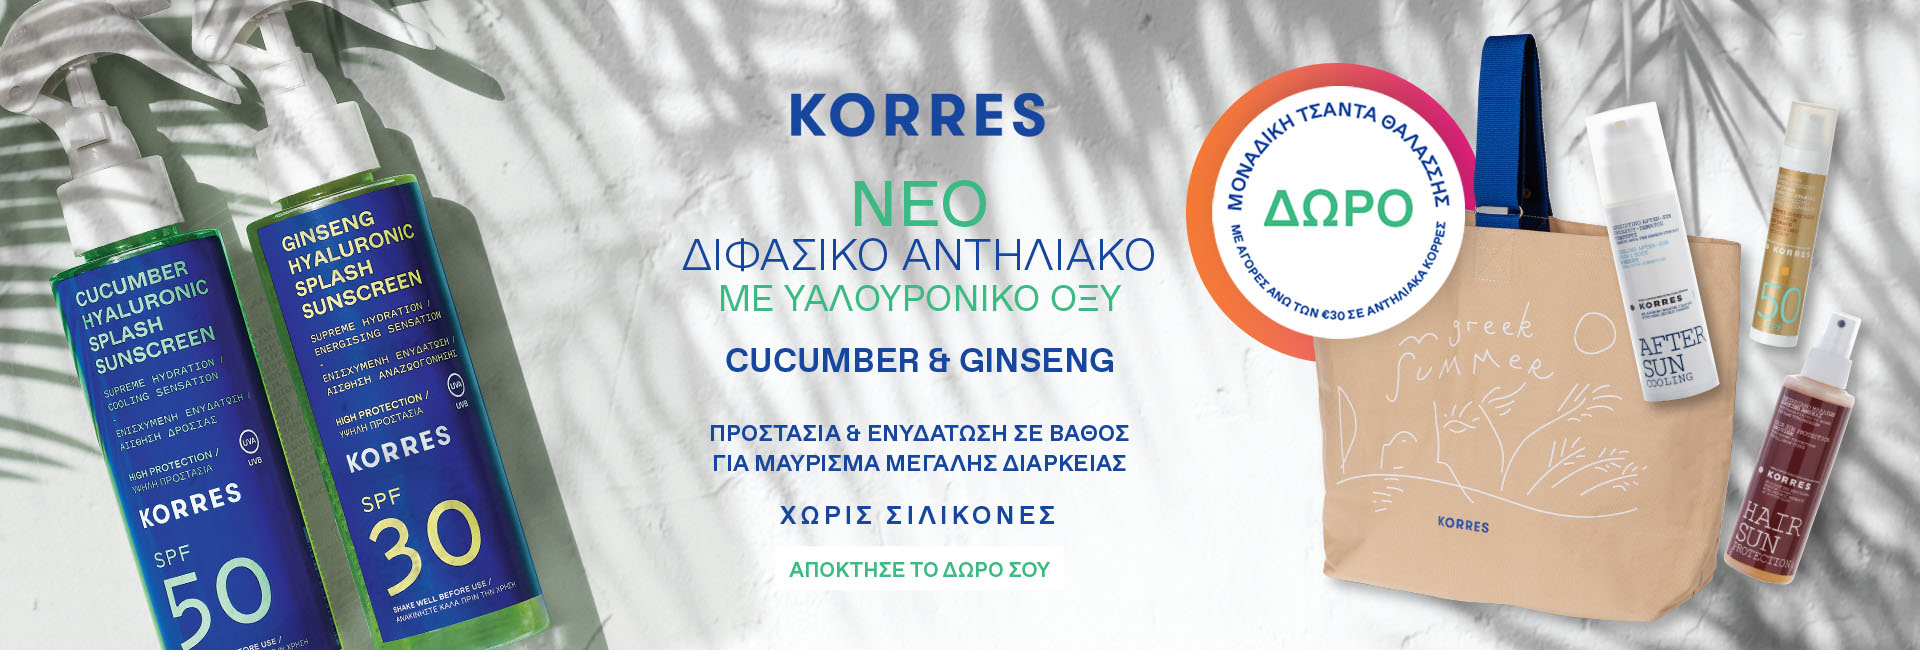 Δώρο Korres Τσάντα Θαλάσσης Με Αγορές Αντηλιακών Korres Άνω Των 30€